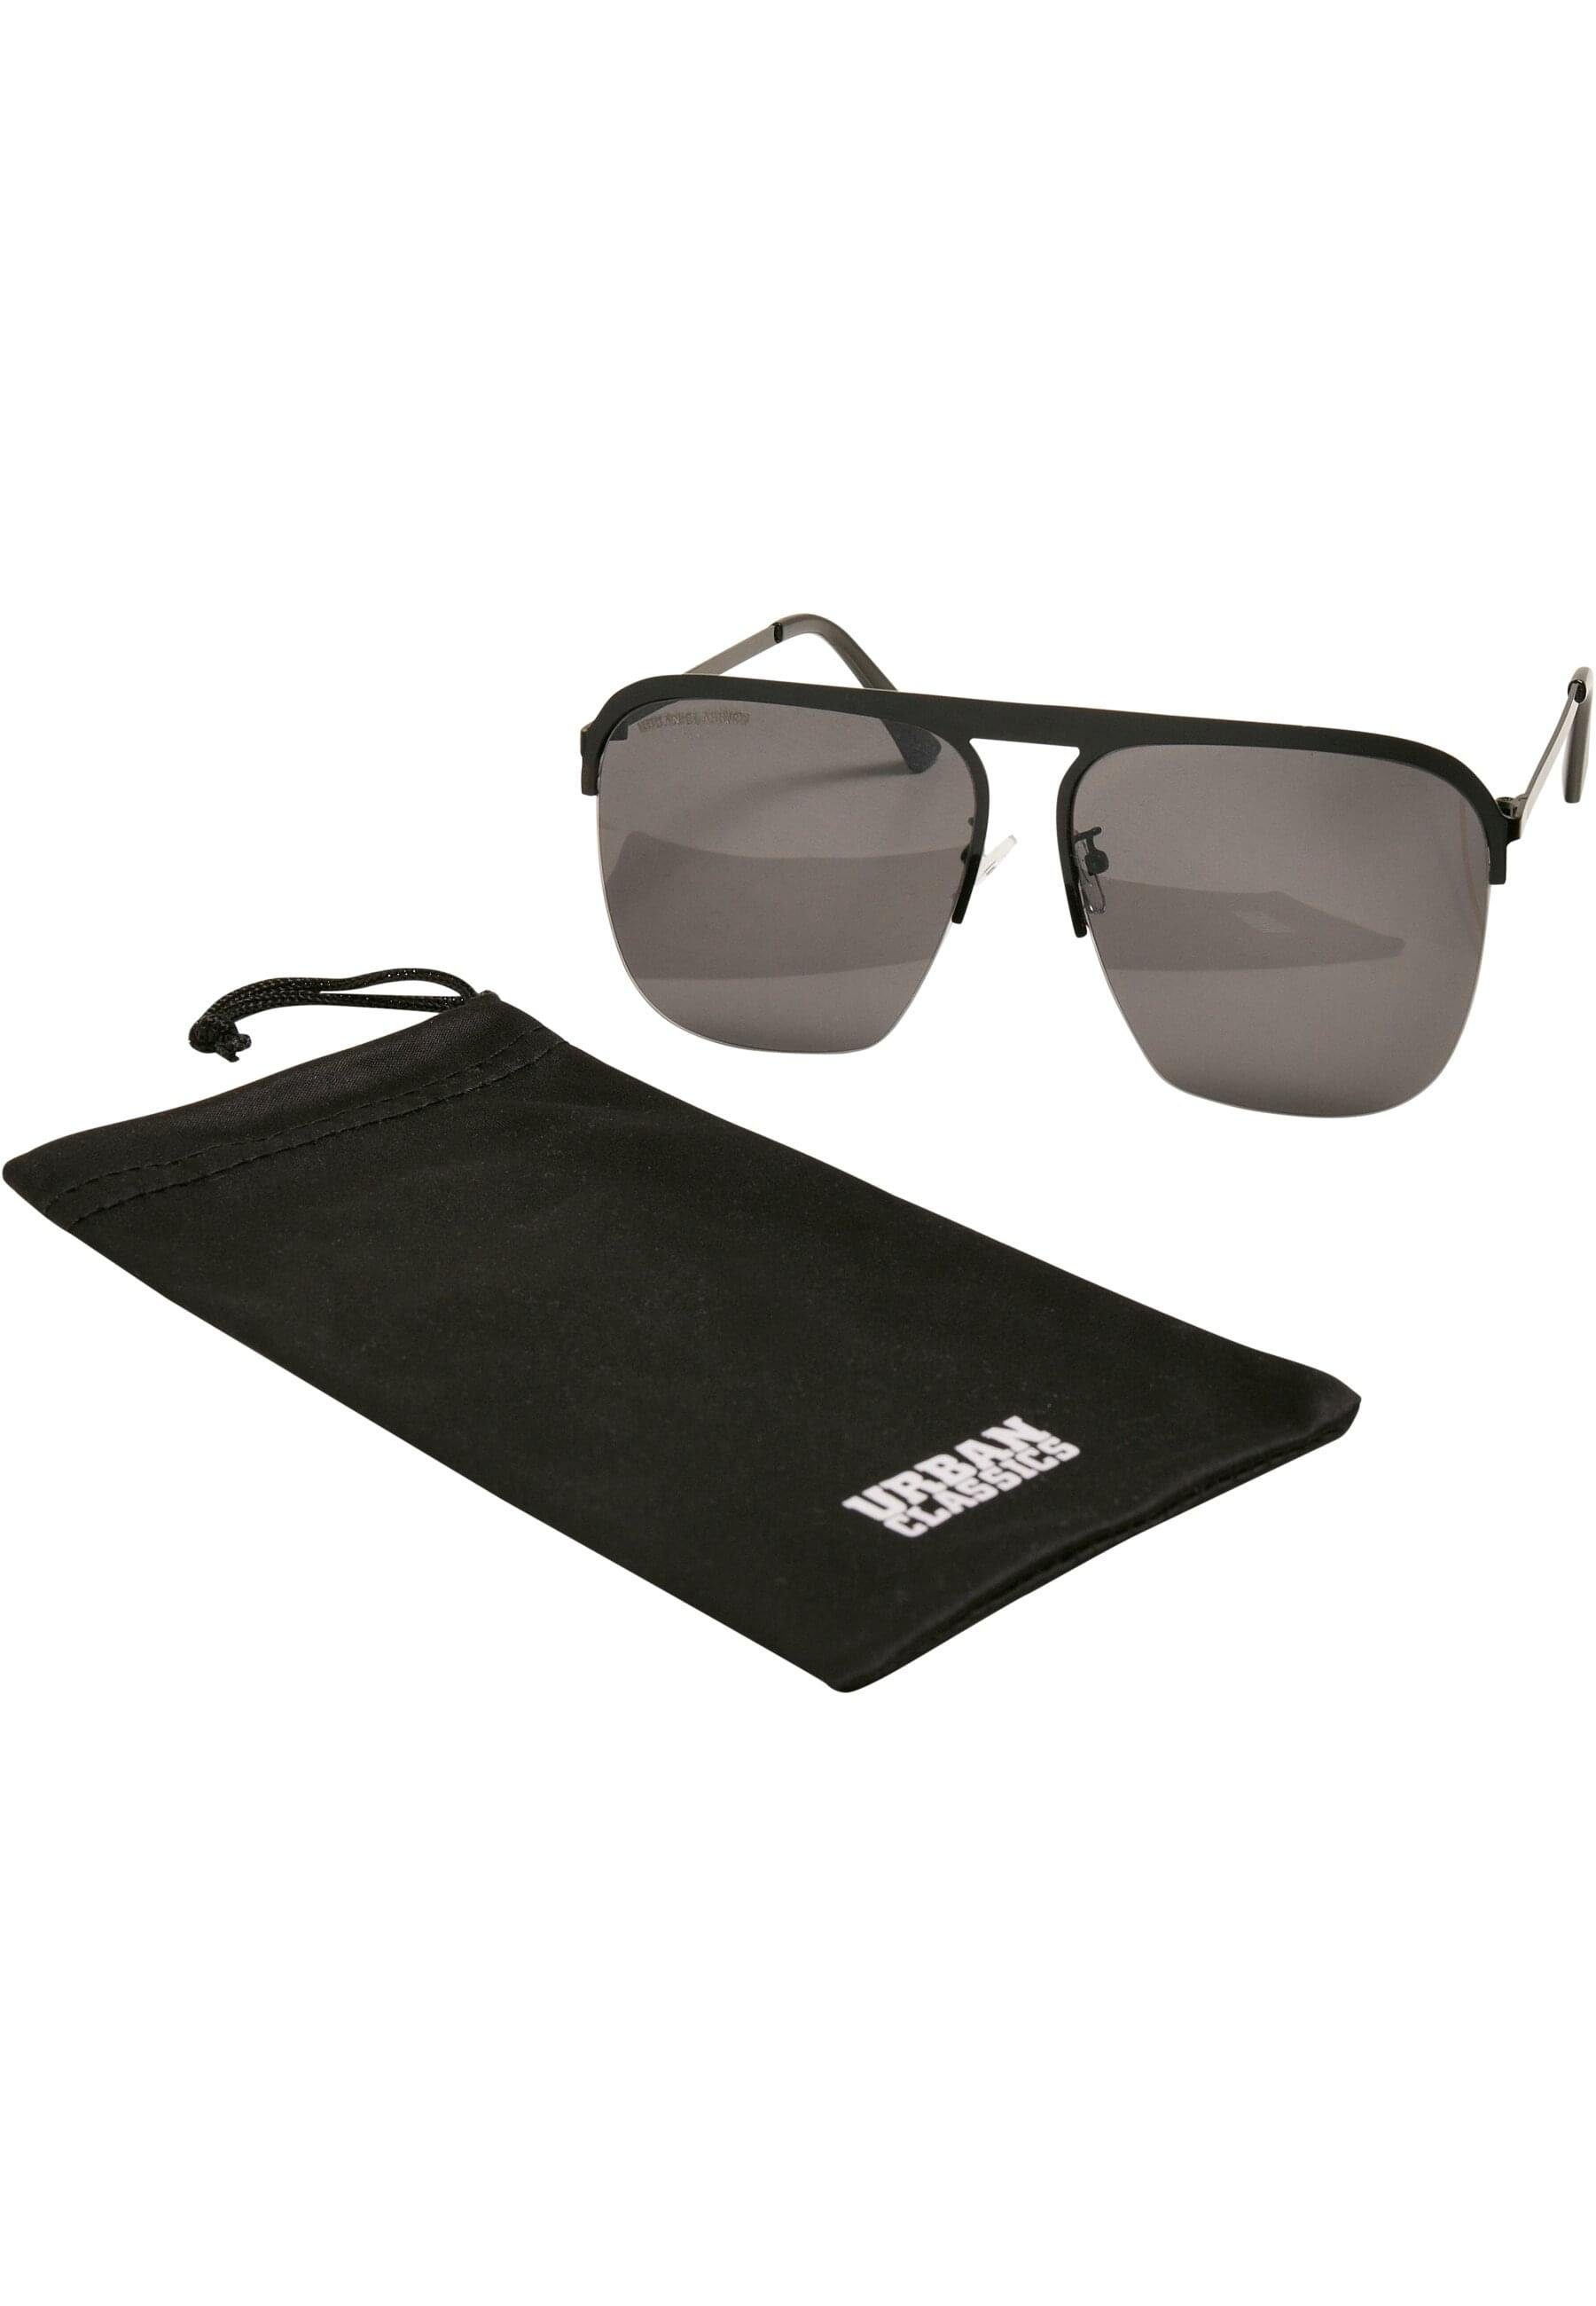 URBAN CLASSICS Sonnenbrille Urban Classics Unisex Sunglasses Carolina